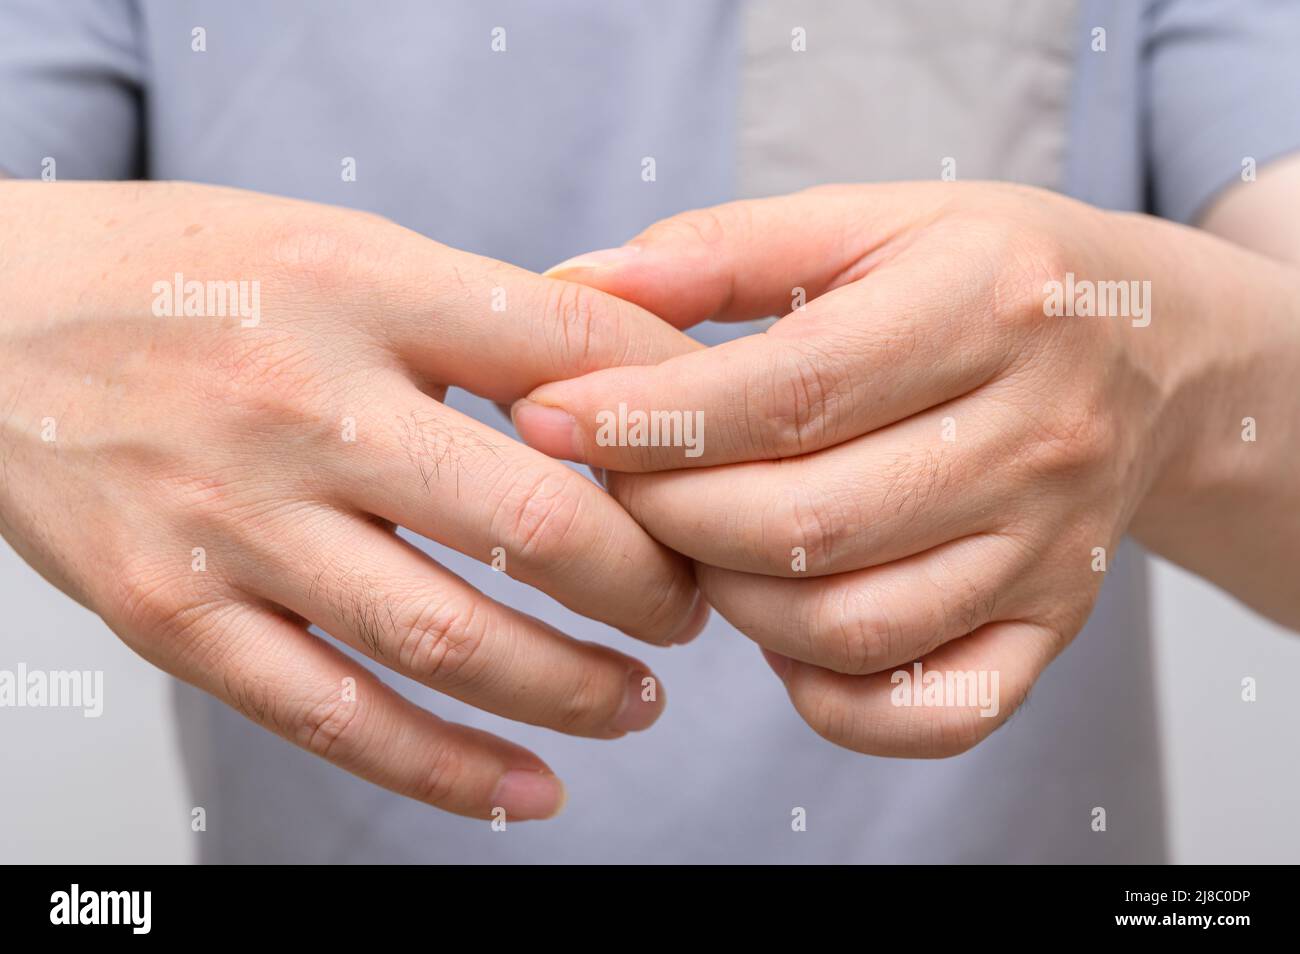 Hände von Männern, die an Gelenkschmerzen leiden. Ursachen für rheumatoide Arthritis, Gicht. Gesundheitsfürsorge und medizinisches Konzept. Stockfoto